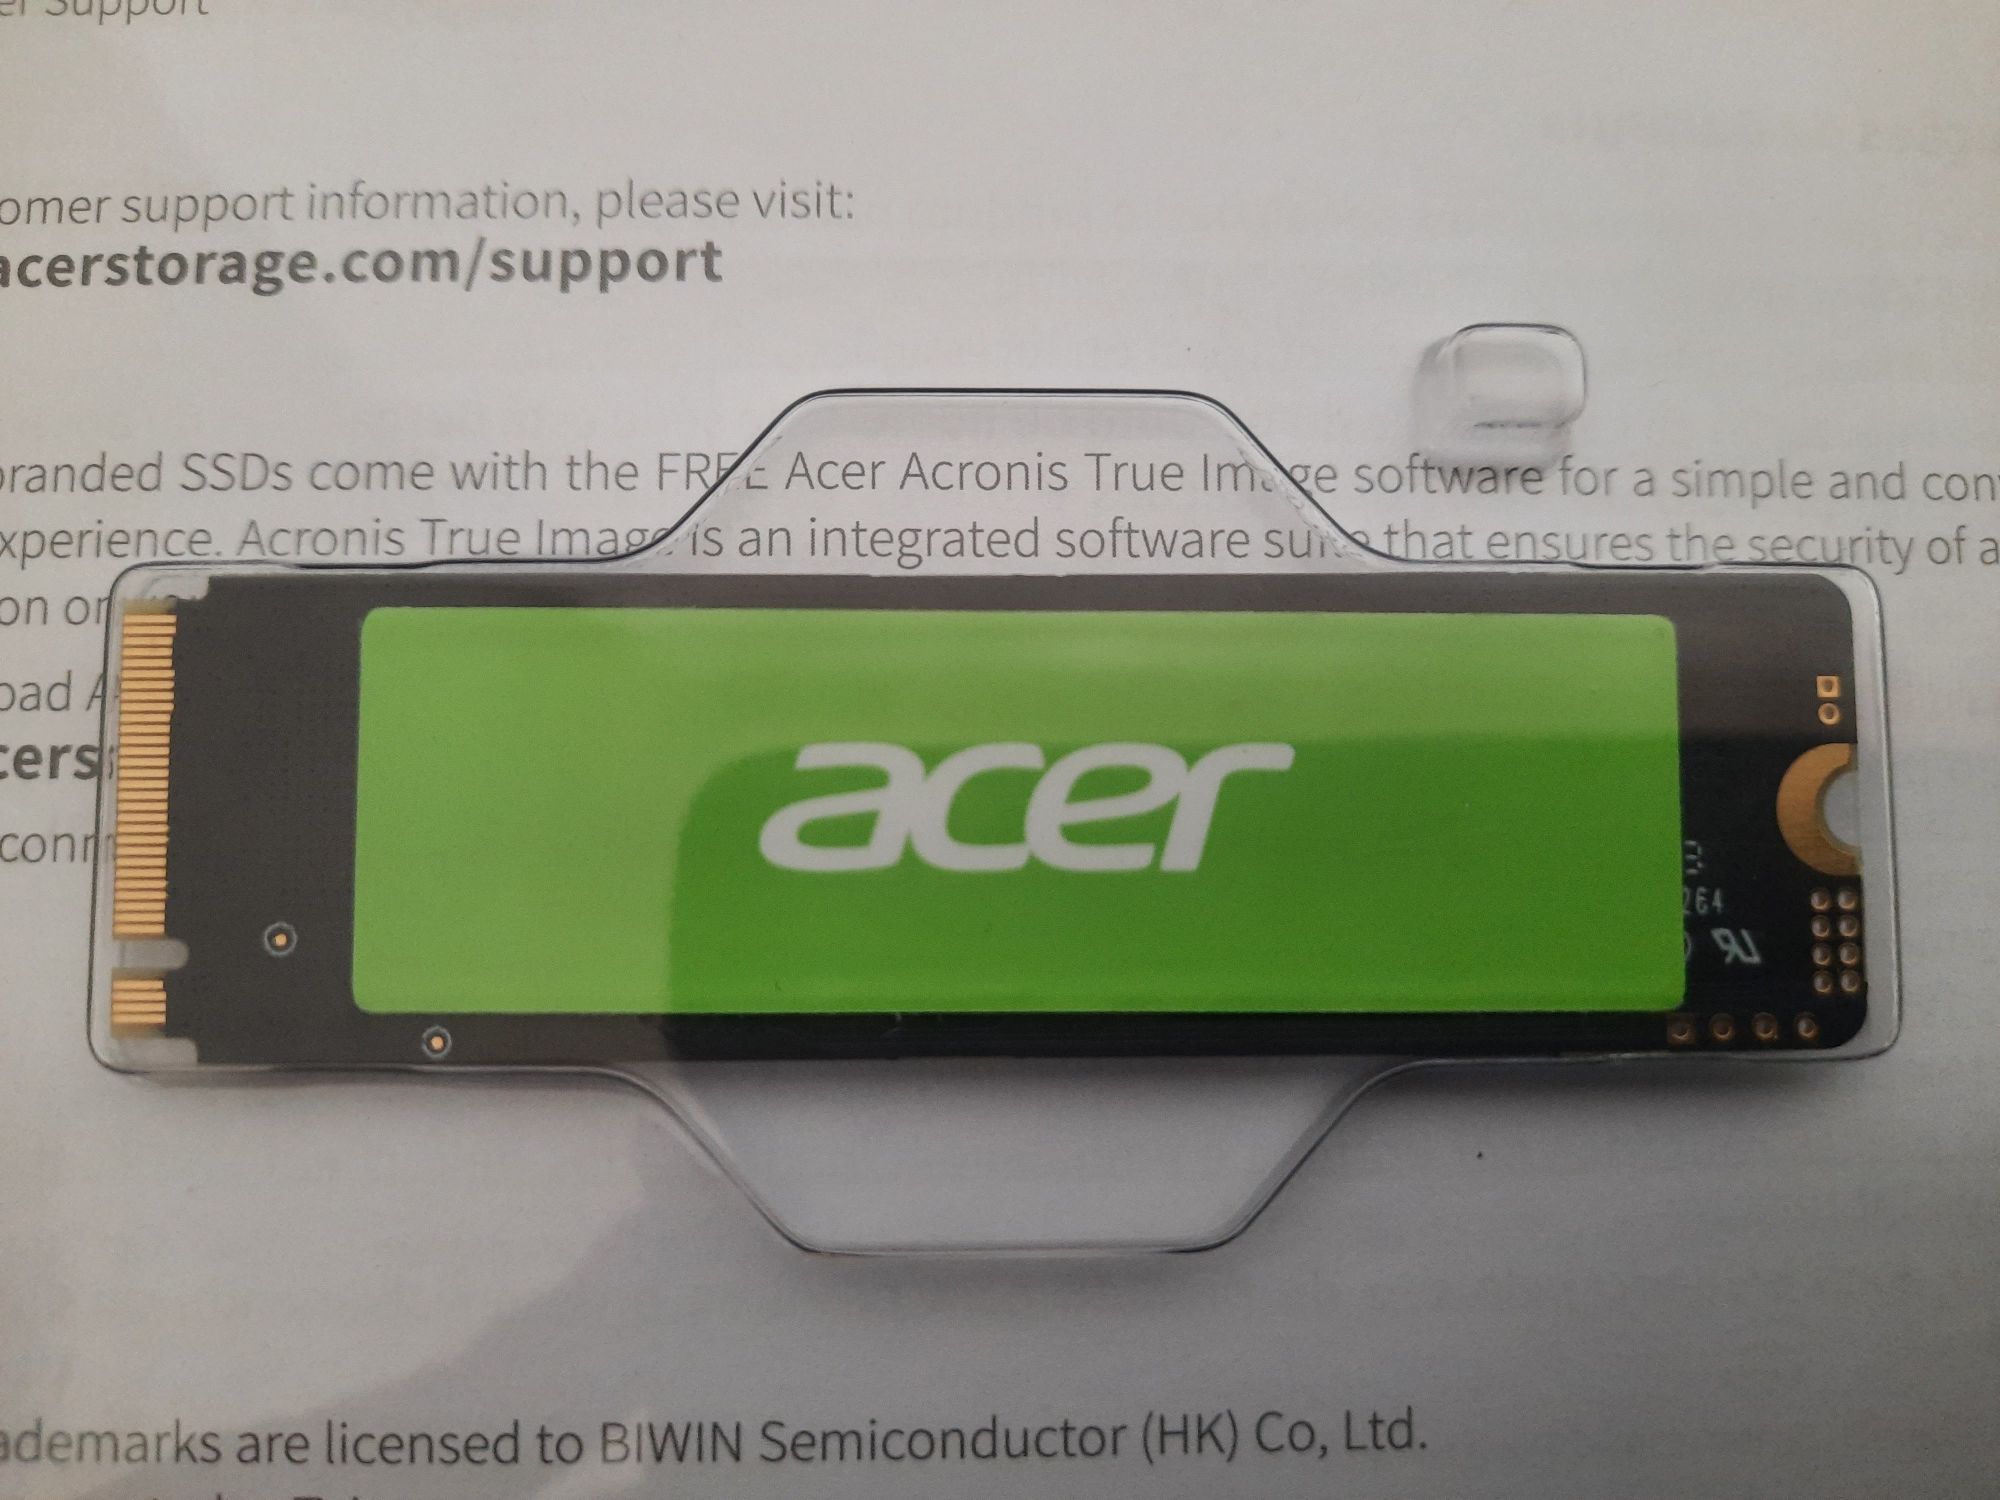 Продается память на Ноутбуки SSD Acer FA 100.